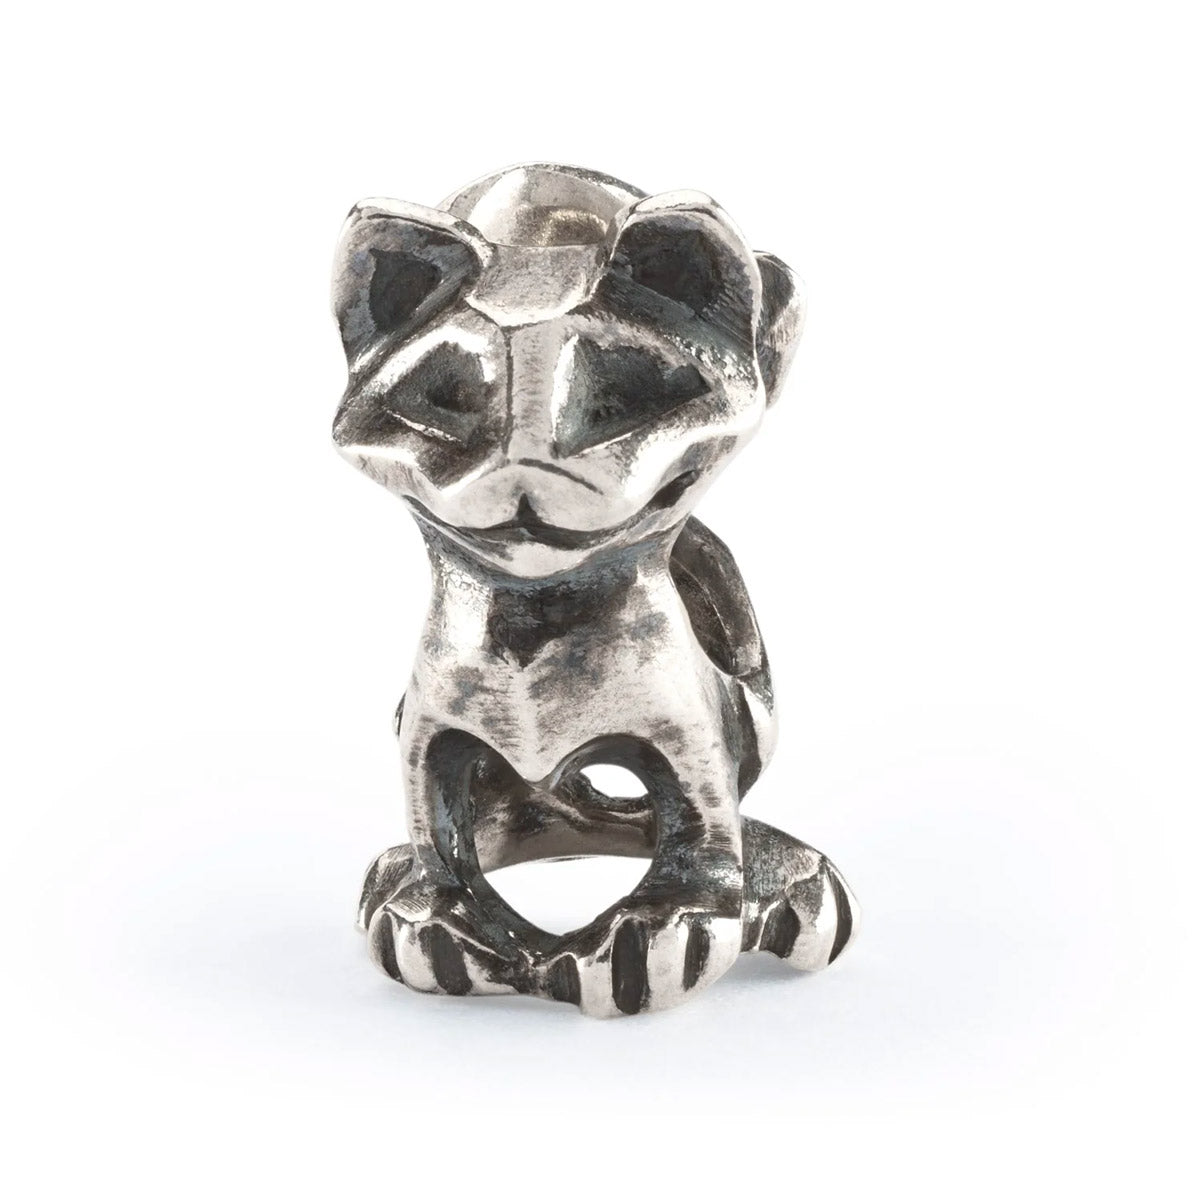 Cuor di Leone Trollbeads | Beads a forma di gattino con un cuoricino creato dalle sue zampette. | TAGBE-10271